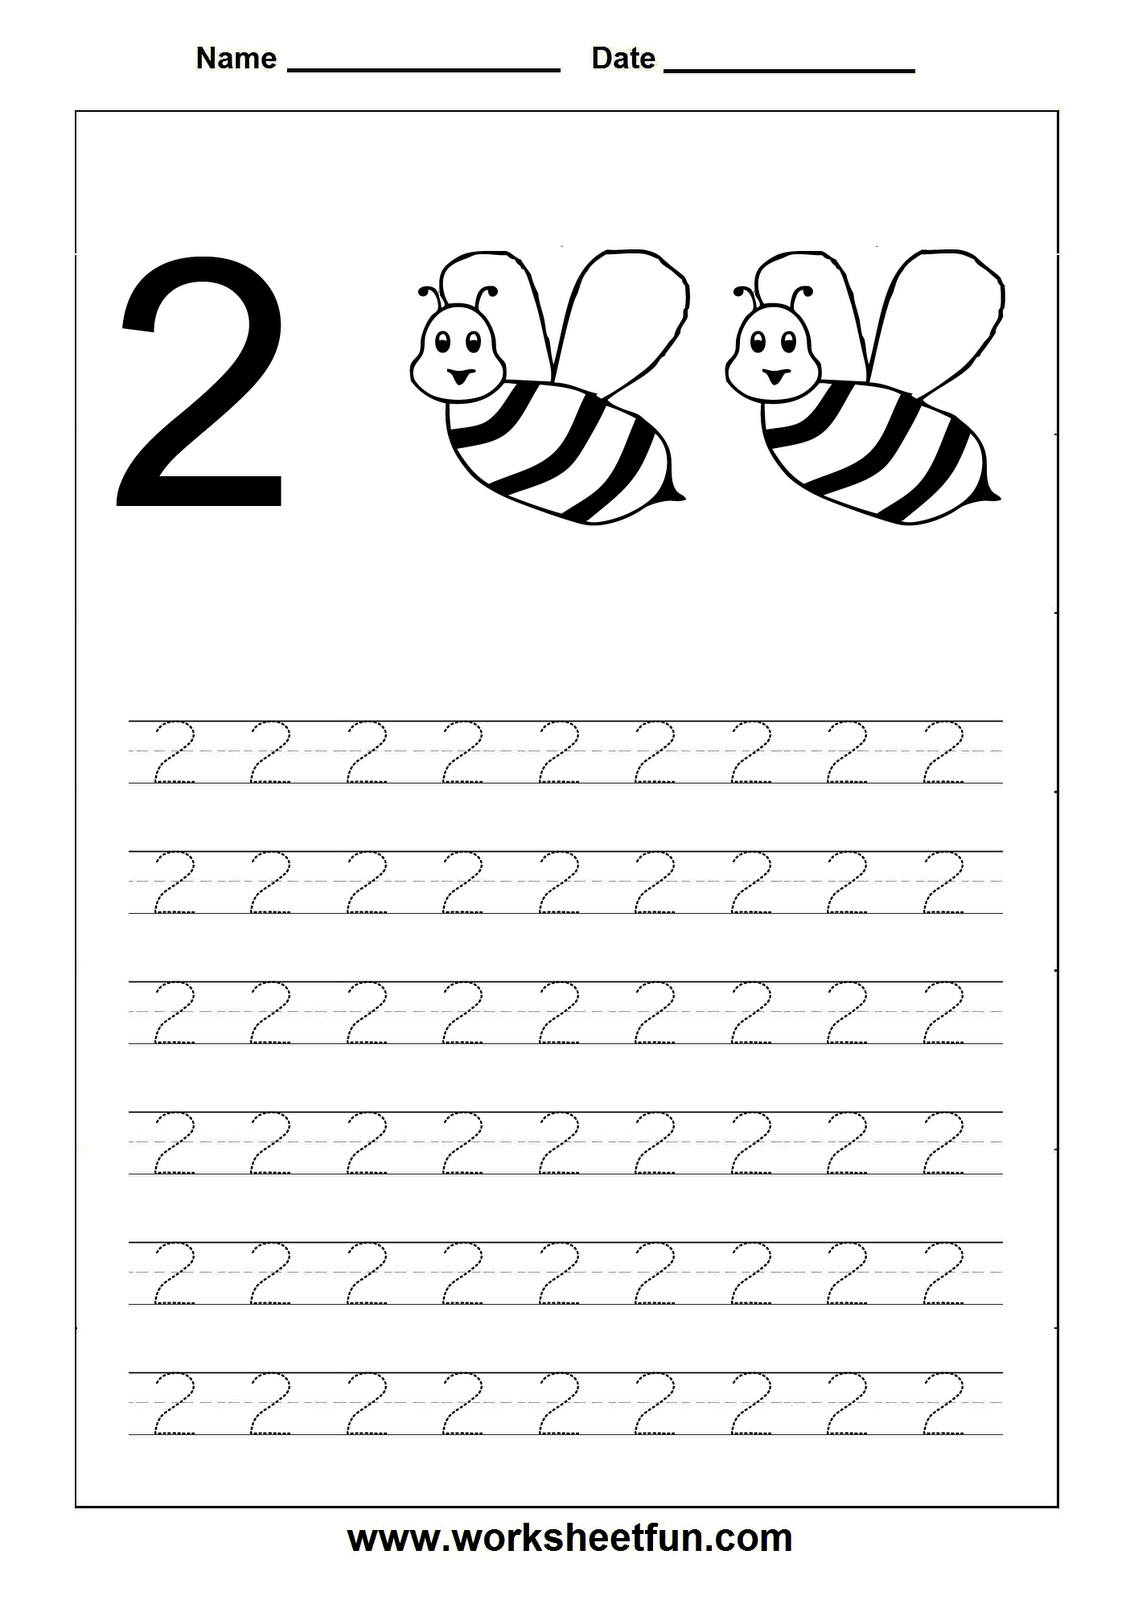 Worksheetfun - Free Printable Worksheets | Toddler Worksheets - Free Printable Toddler Worksheets